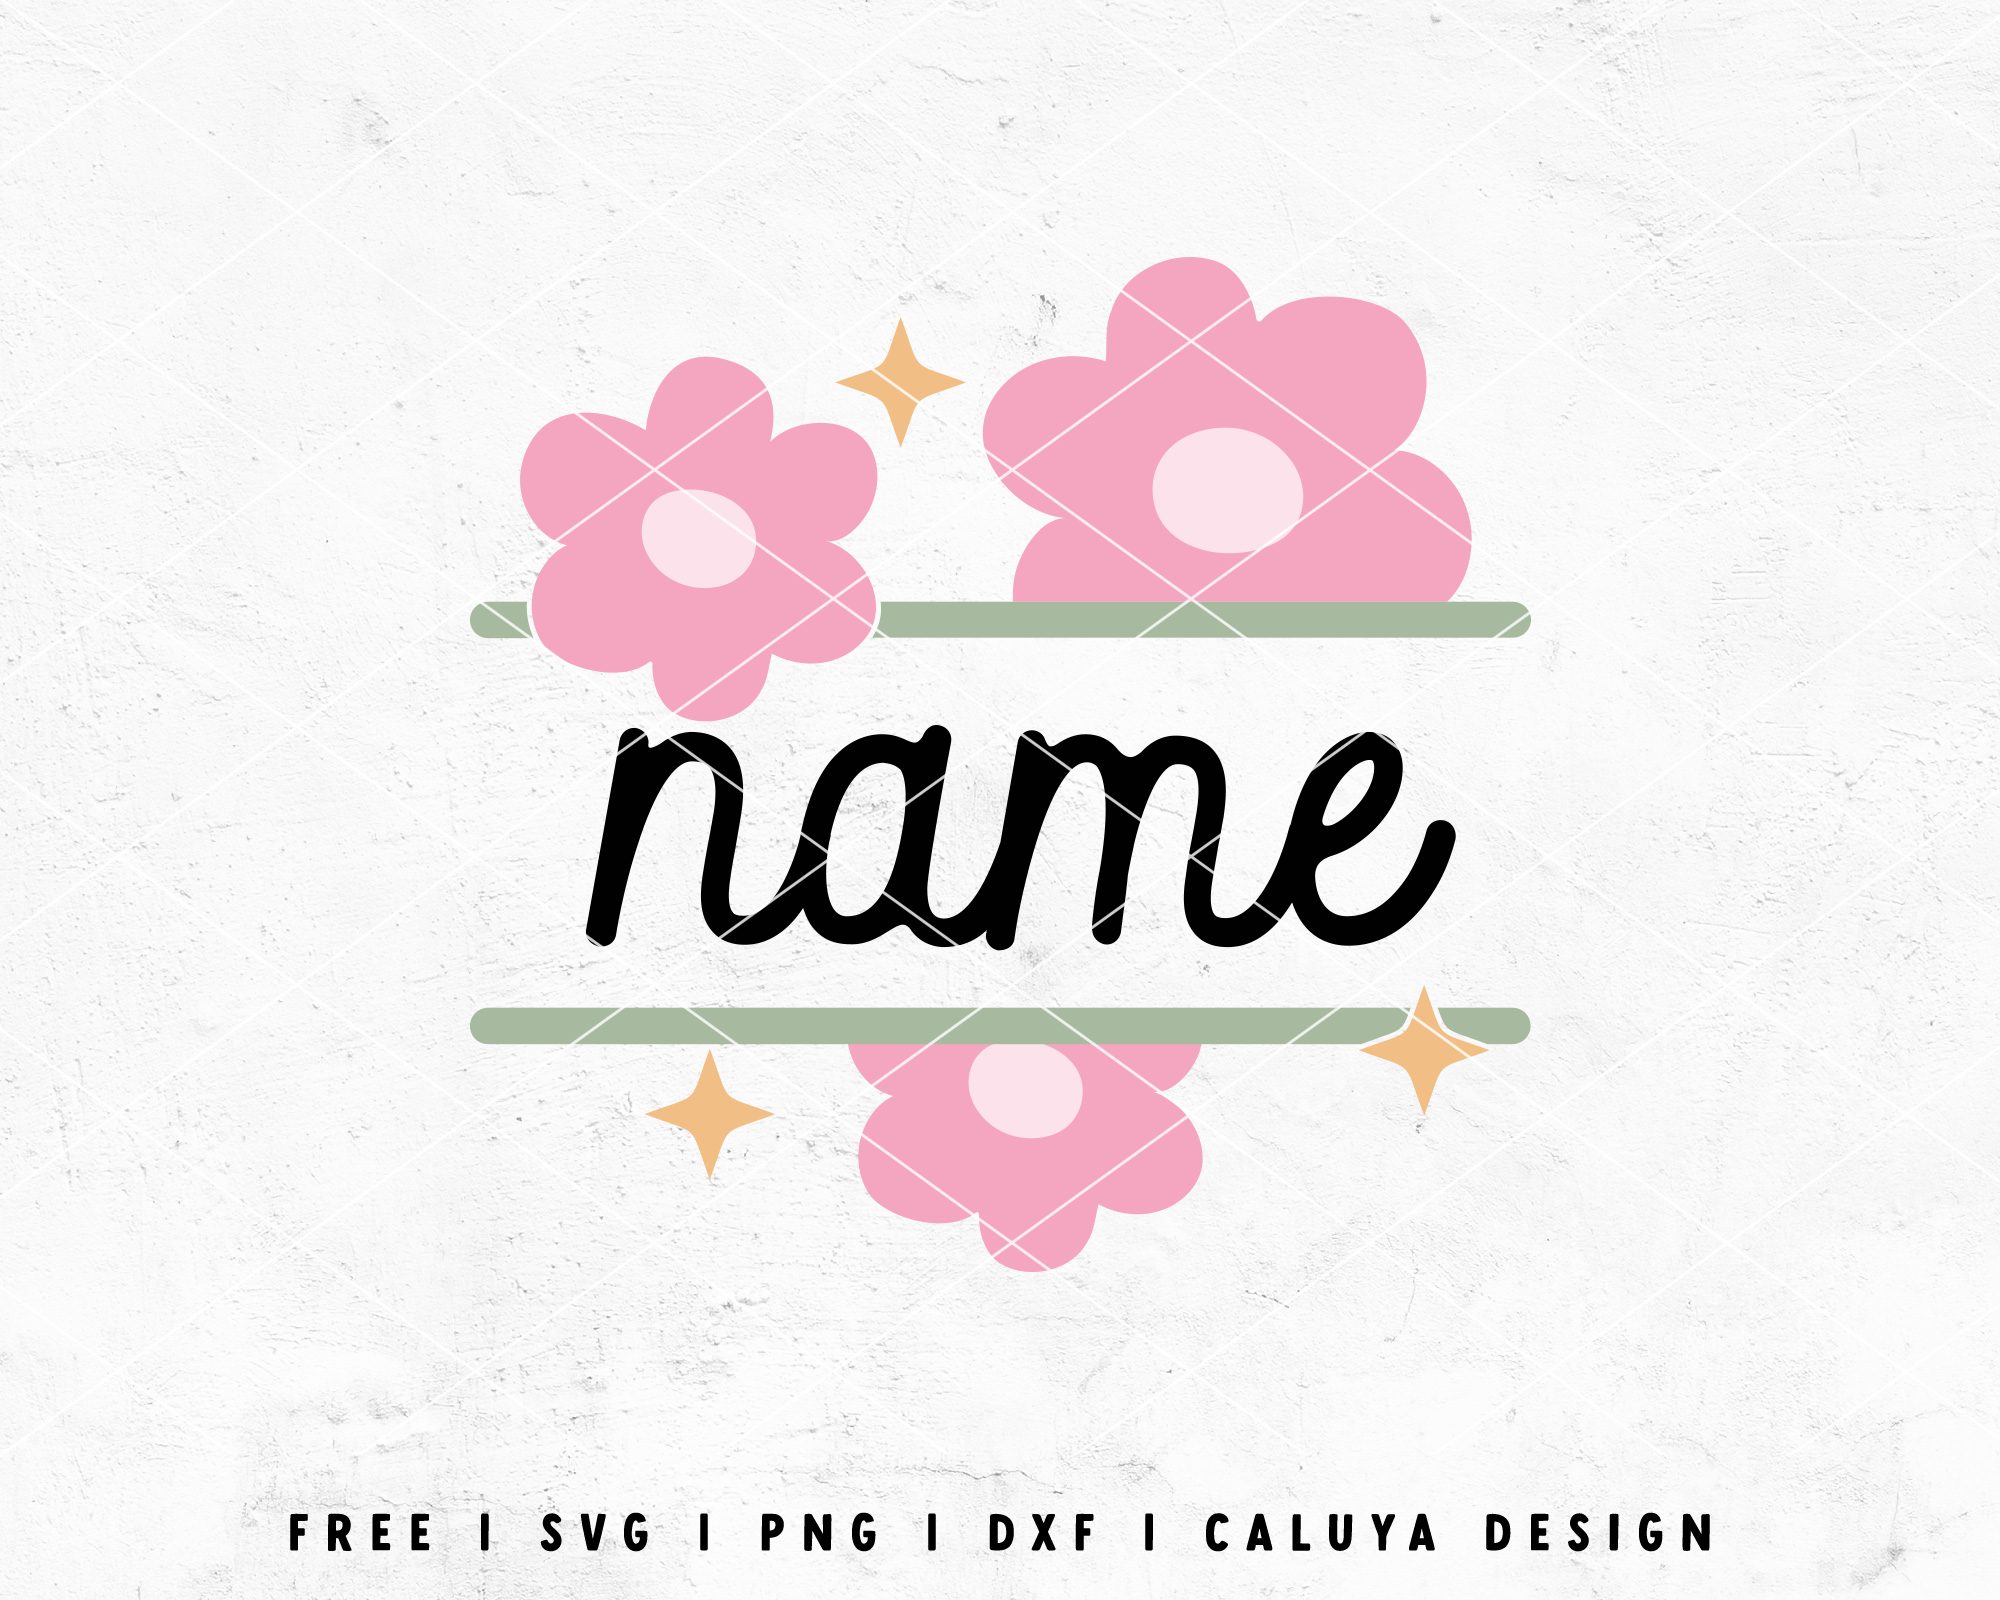 FREE Floral Split Monogram SVG cut file - Craft House SVG